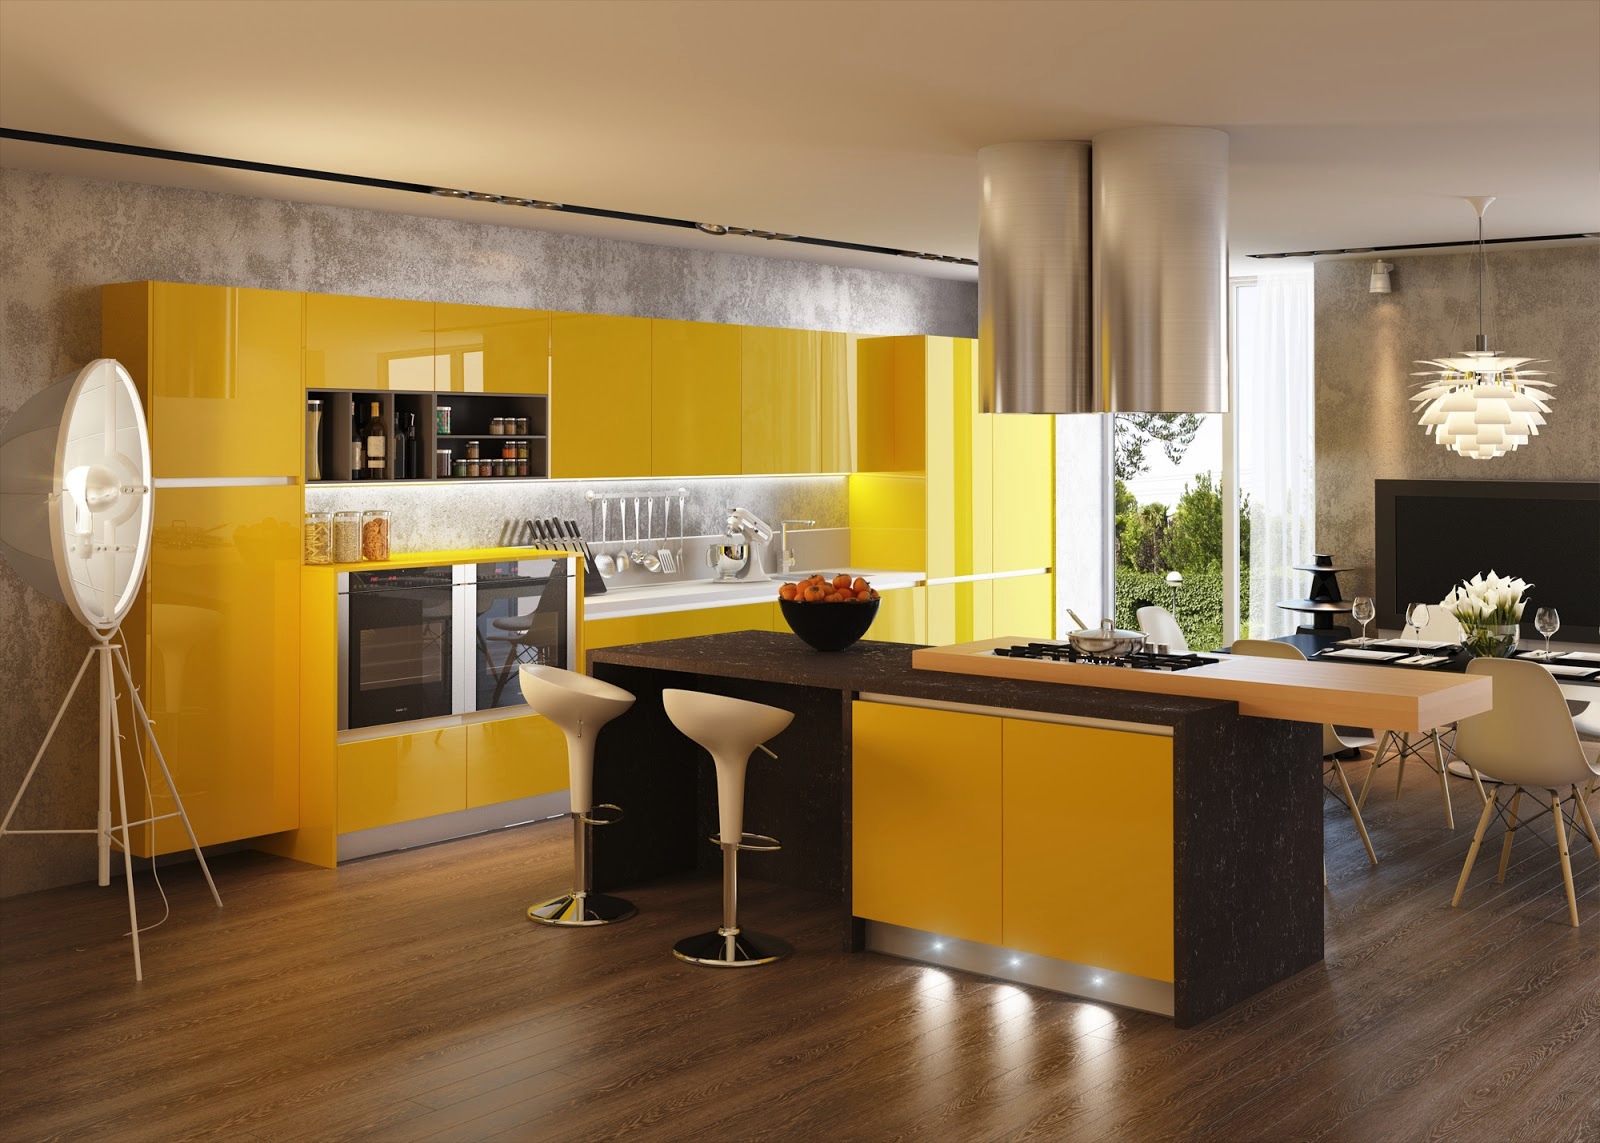 Дизайн ярко-жёлтого кухонного гарнитура в интерьере кухни